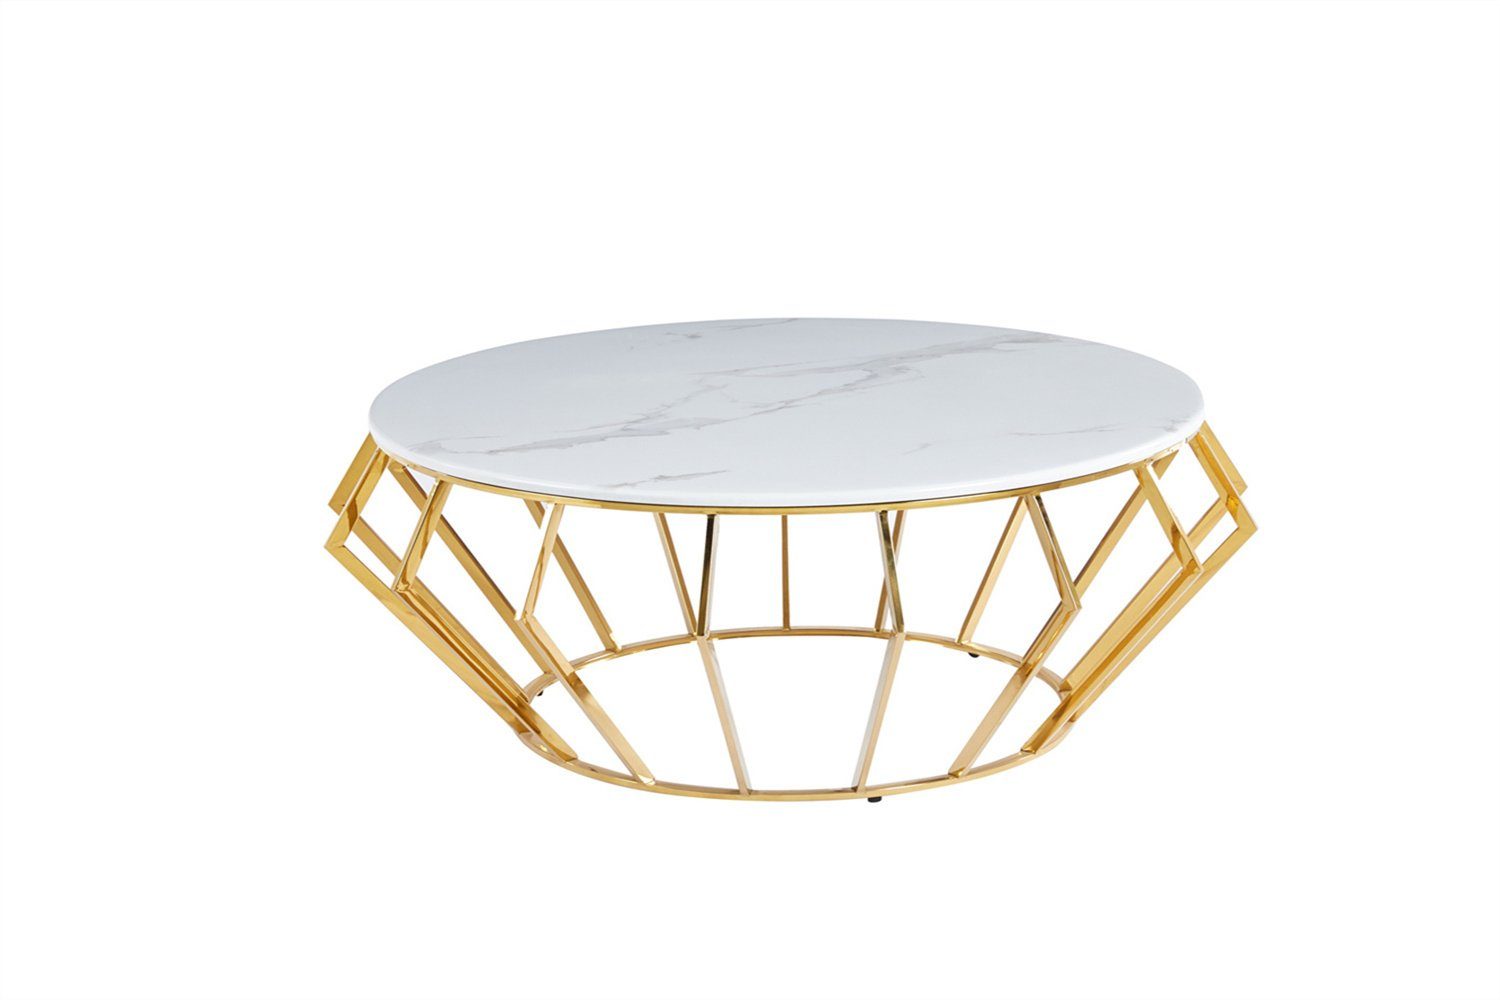 König der Möbel Couchtisch Tisch m. Gitter Metallgestell Gold (Tischplatte aus Hochwertigen Echt Marmor), Runder Sofa Beistelltisch Marmoroptik Weiß